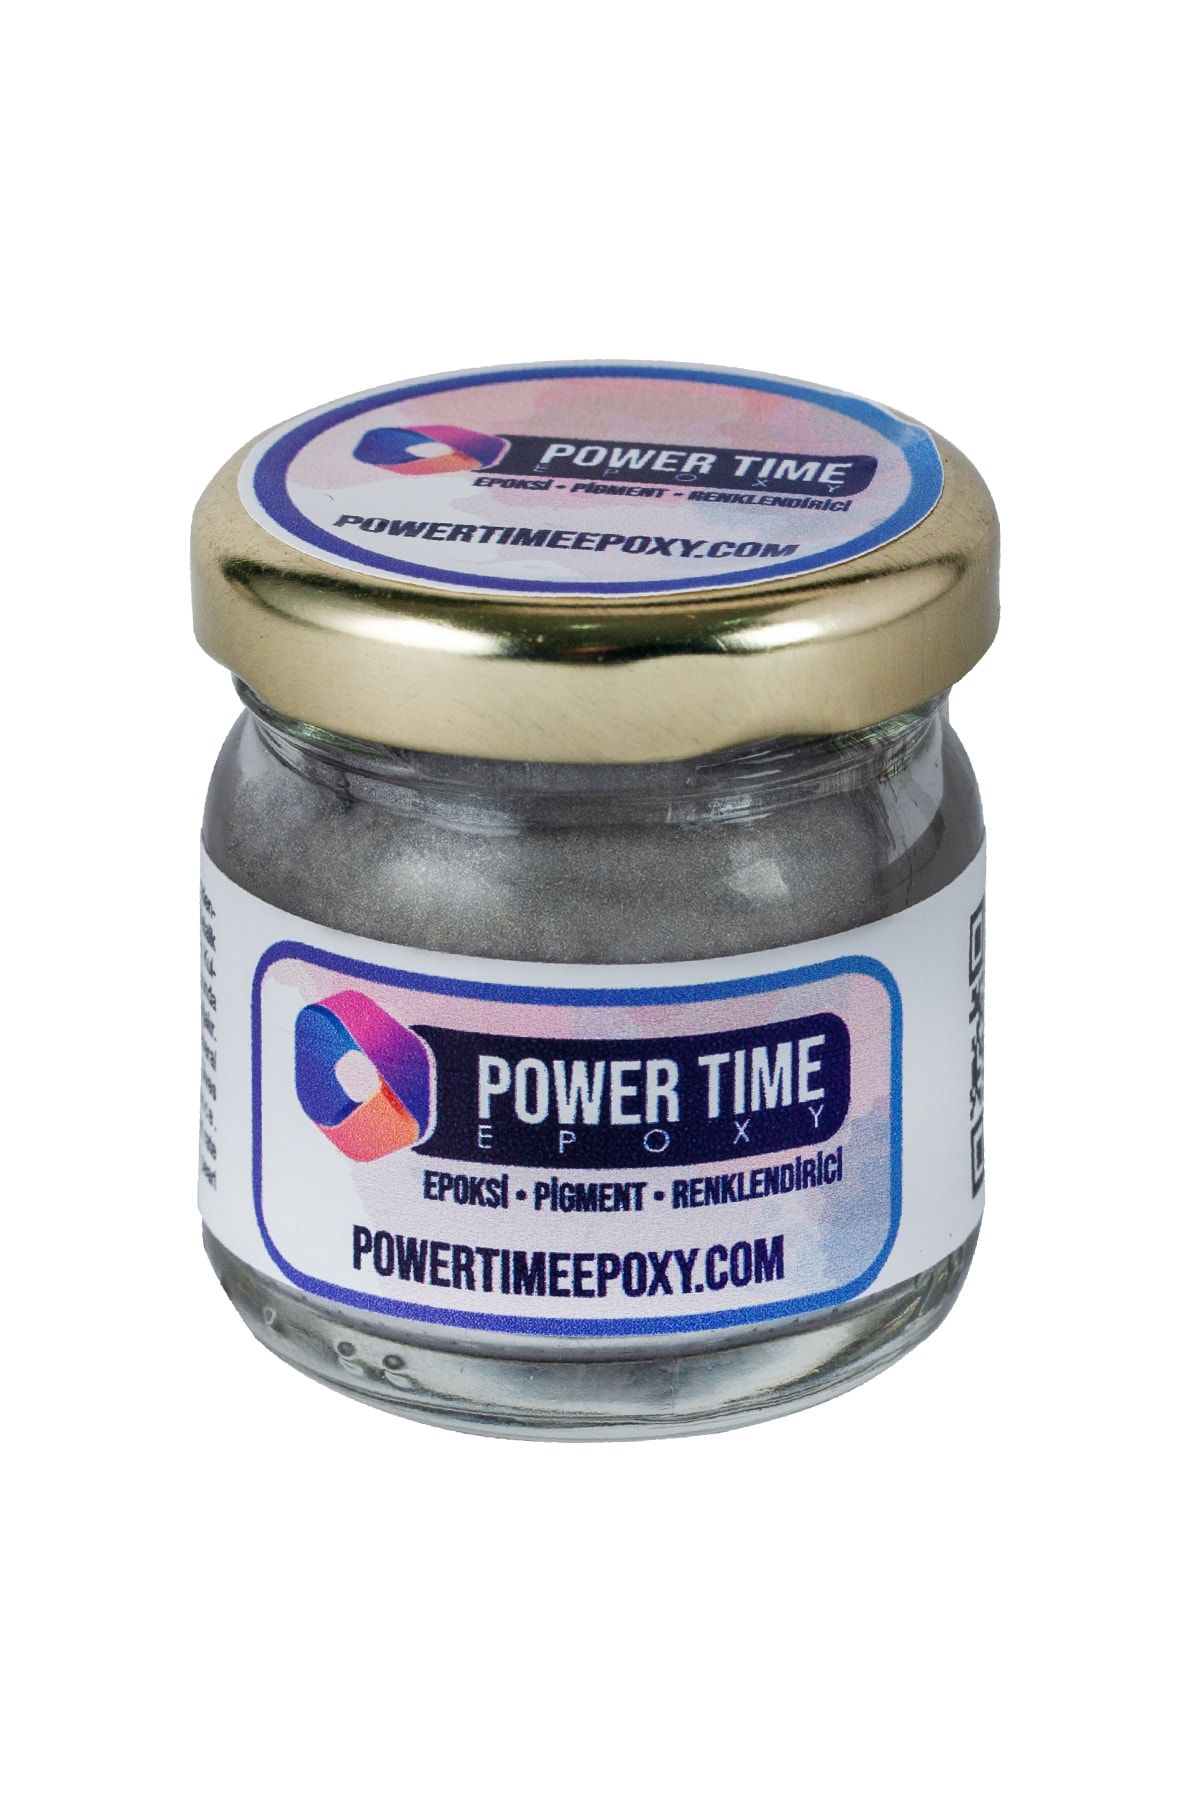 POWER TIME EPOXY Sedefli Metalik Toz Pigment Boya / Gri Gümüş / Epoksi Için